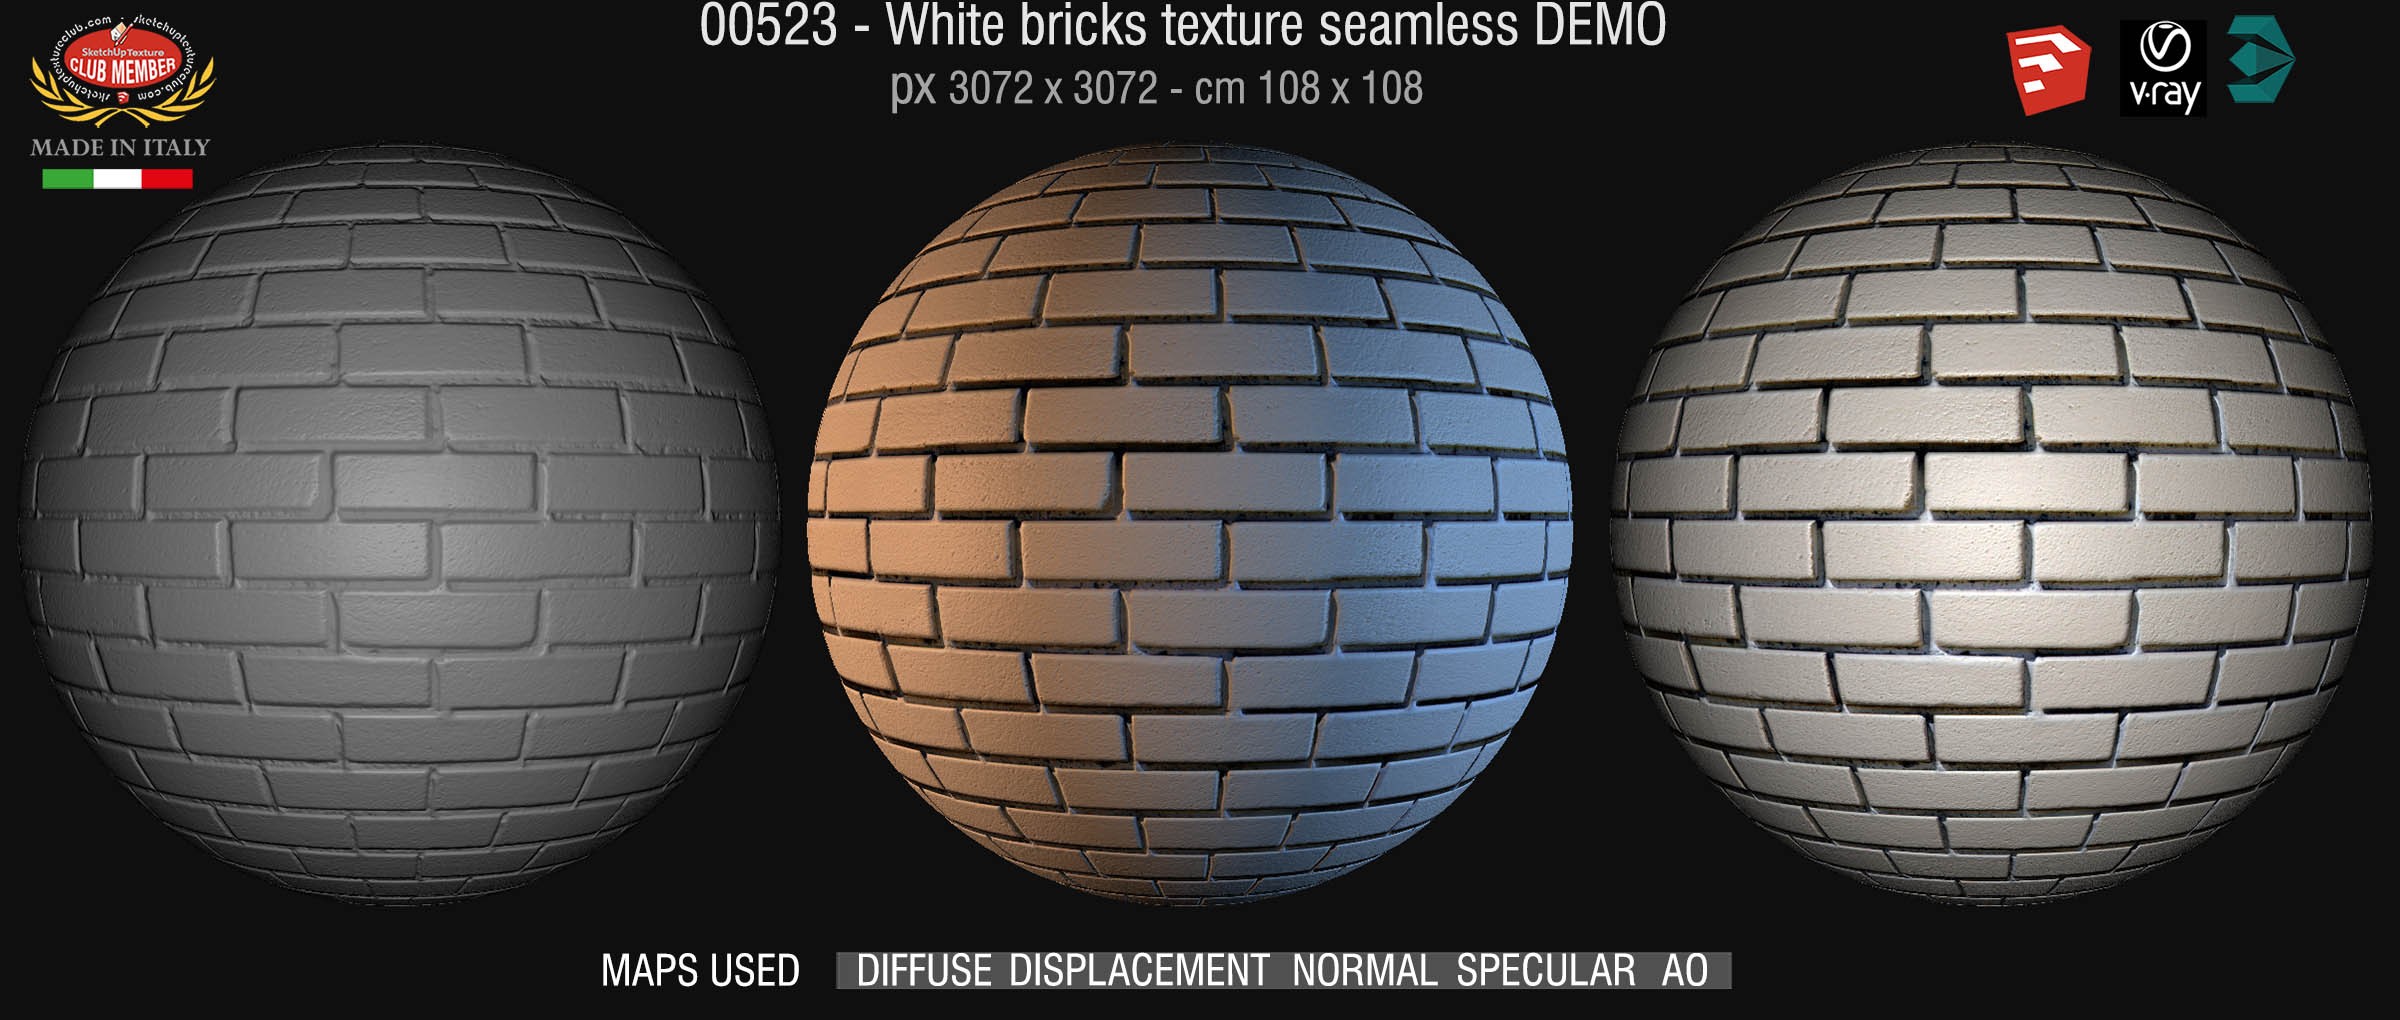 00523 White bricks texture seamless + maps DEMO